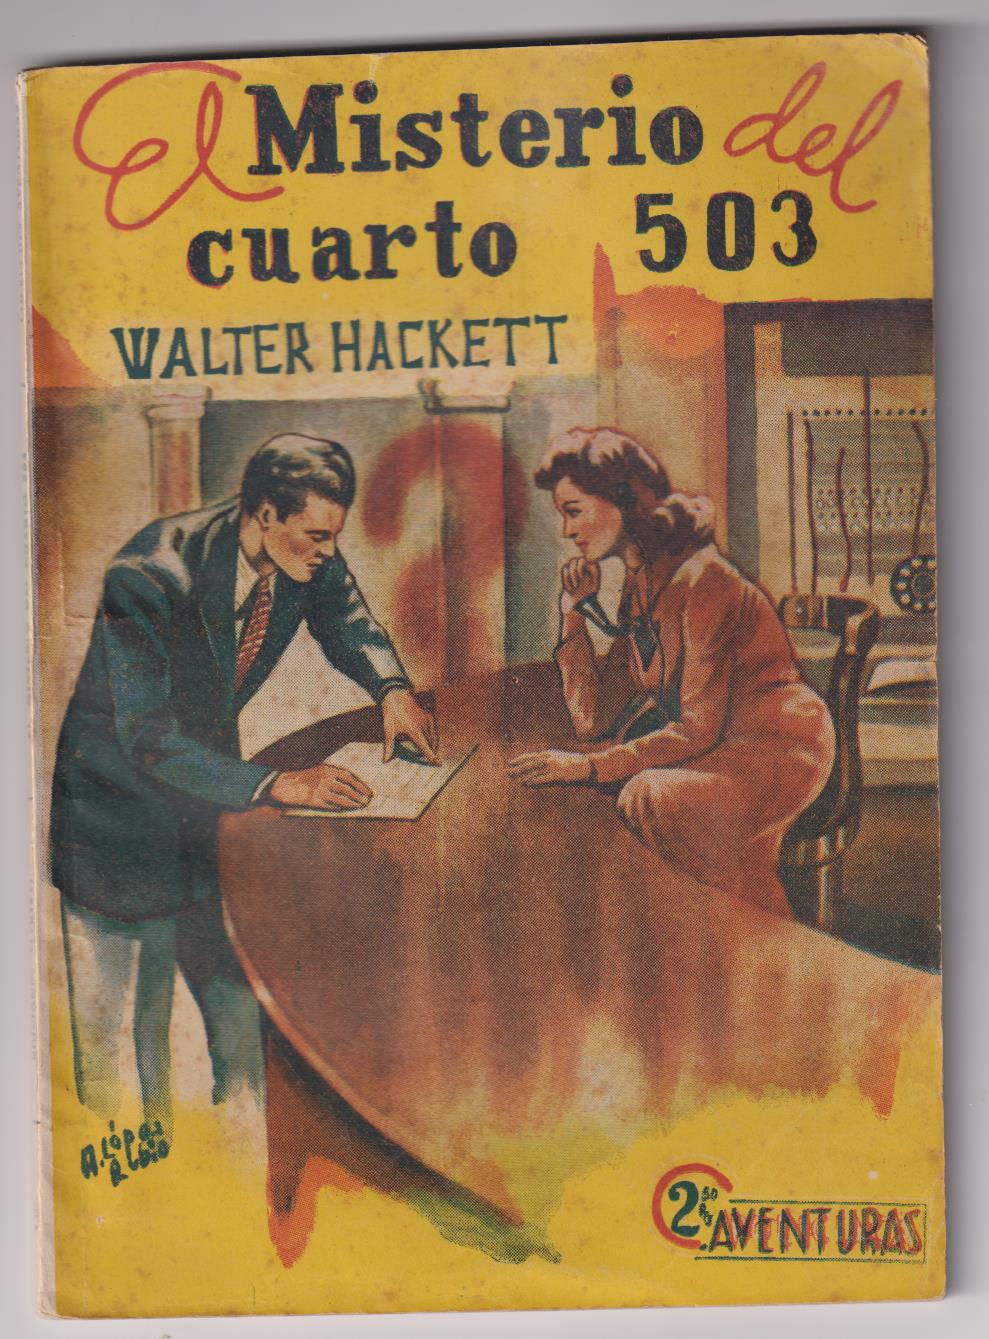 Aventuras nº 65 por Walter Hackett. El Misterio del cuarto nº 503. Ediciones Marsal 1942